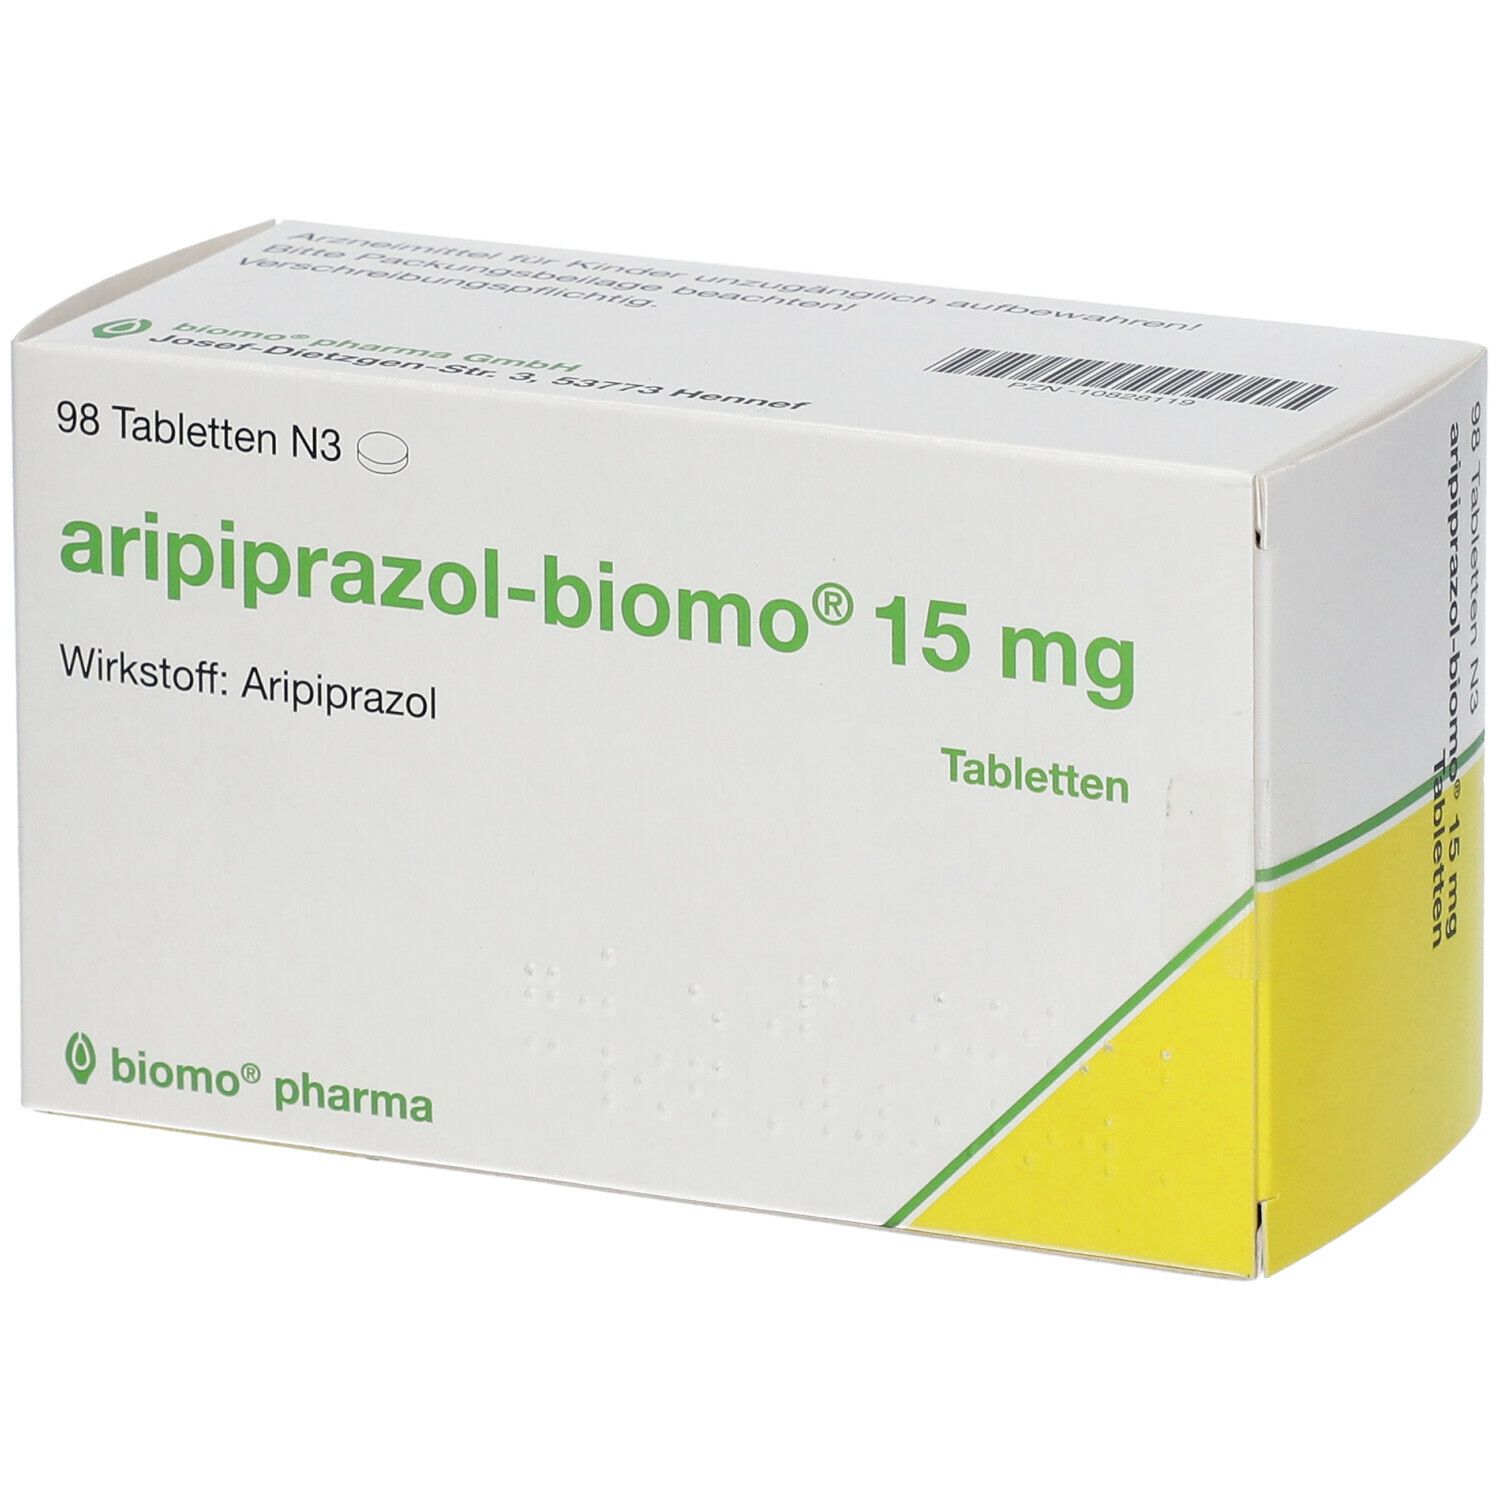 aripiprazol-biomo® 15 mg